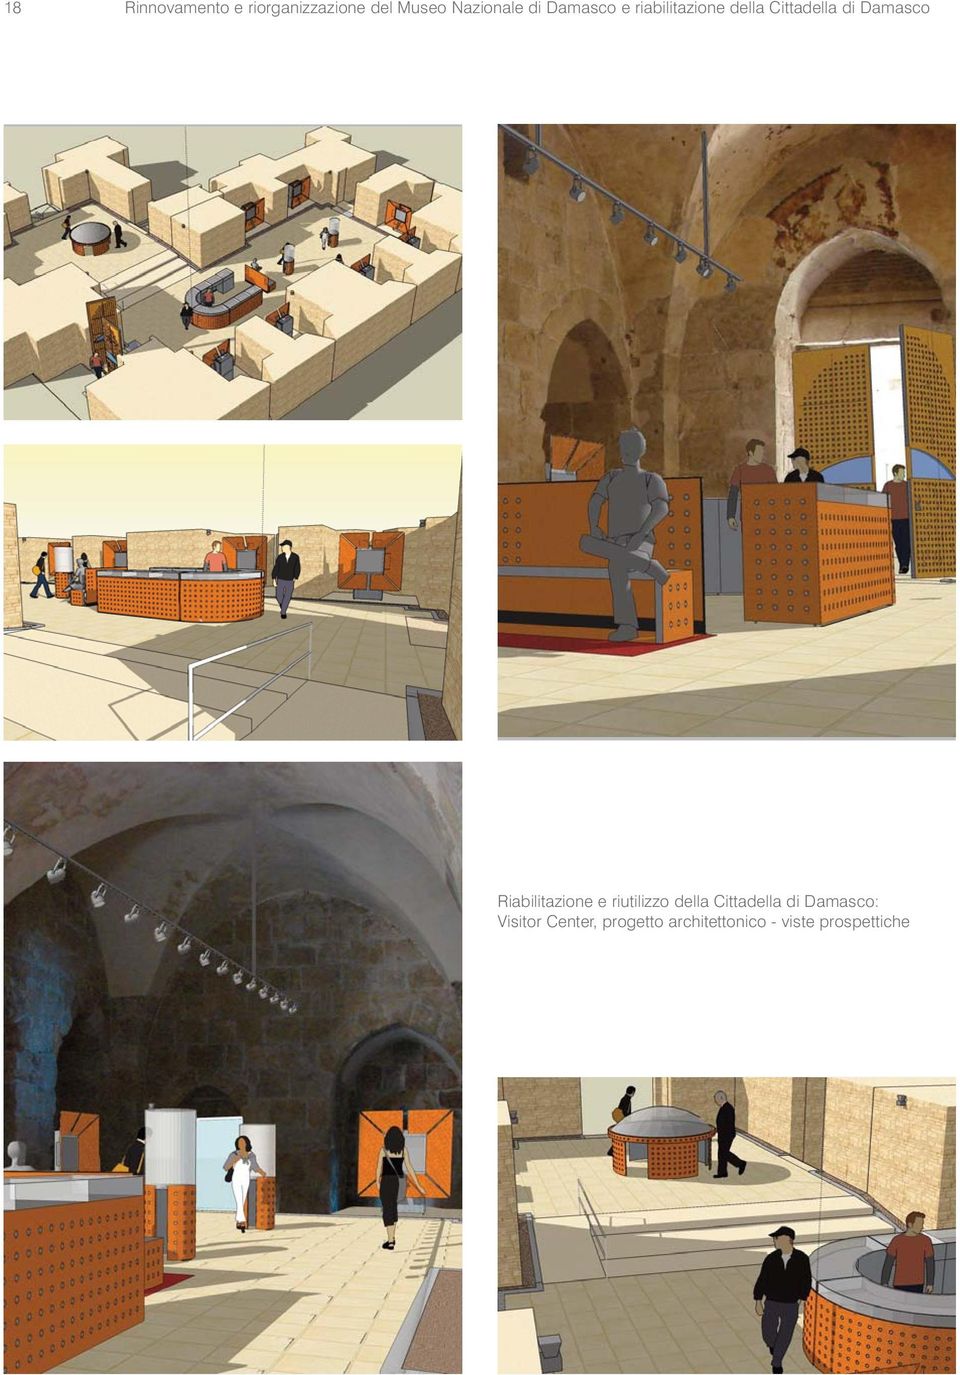 Riabilitazione e riutilizzo della Cittadella di Damasco: